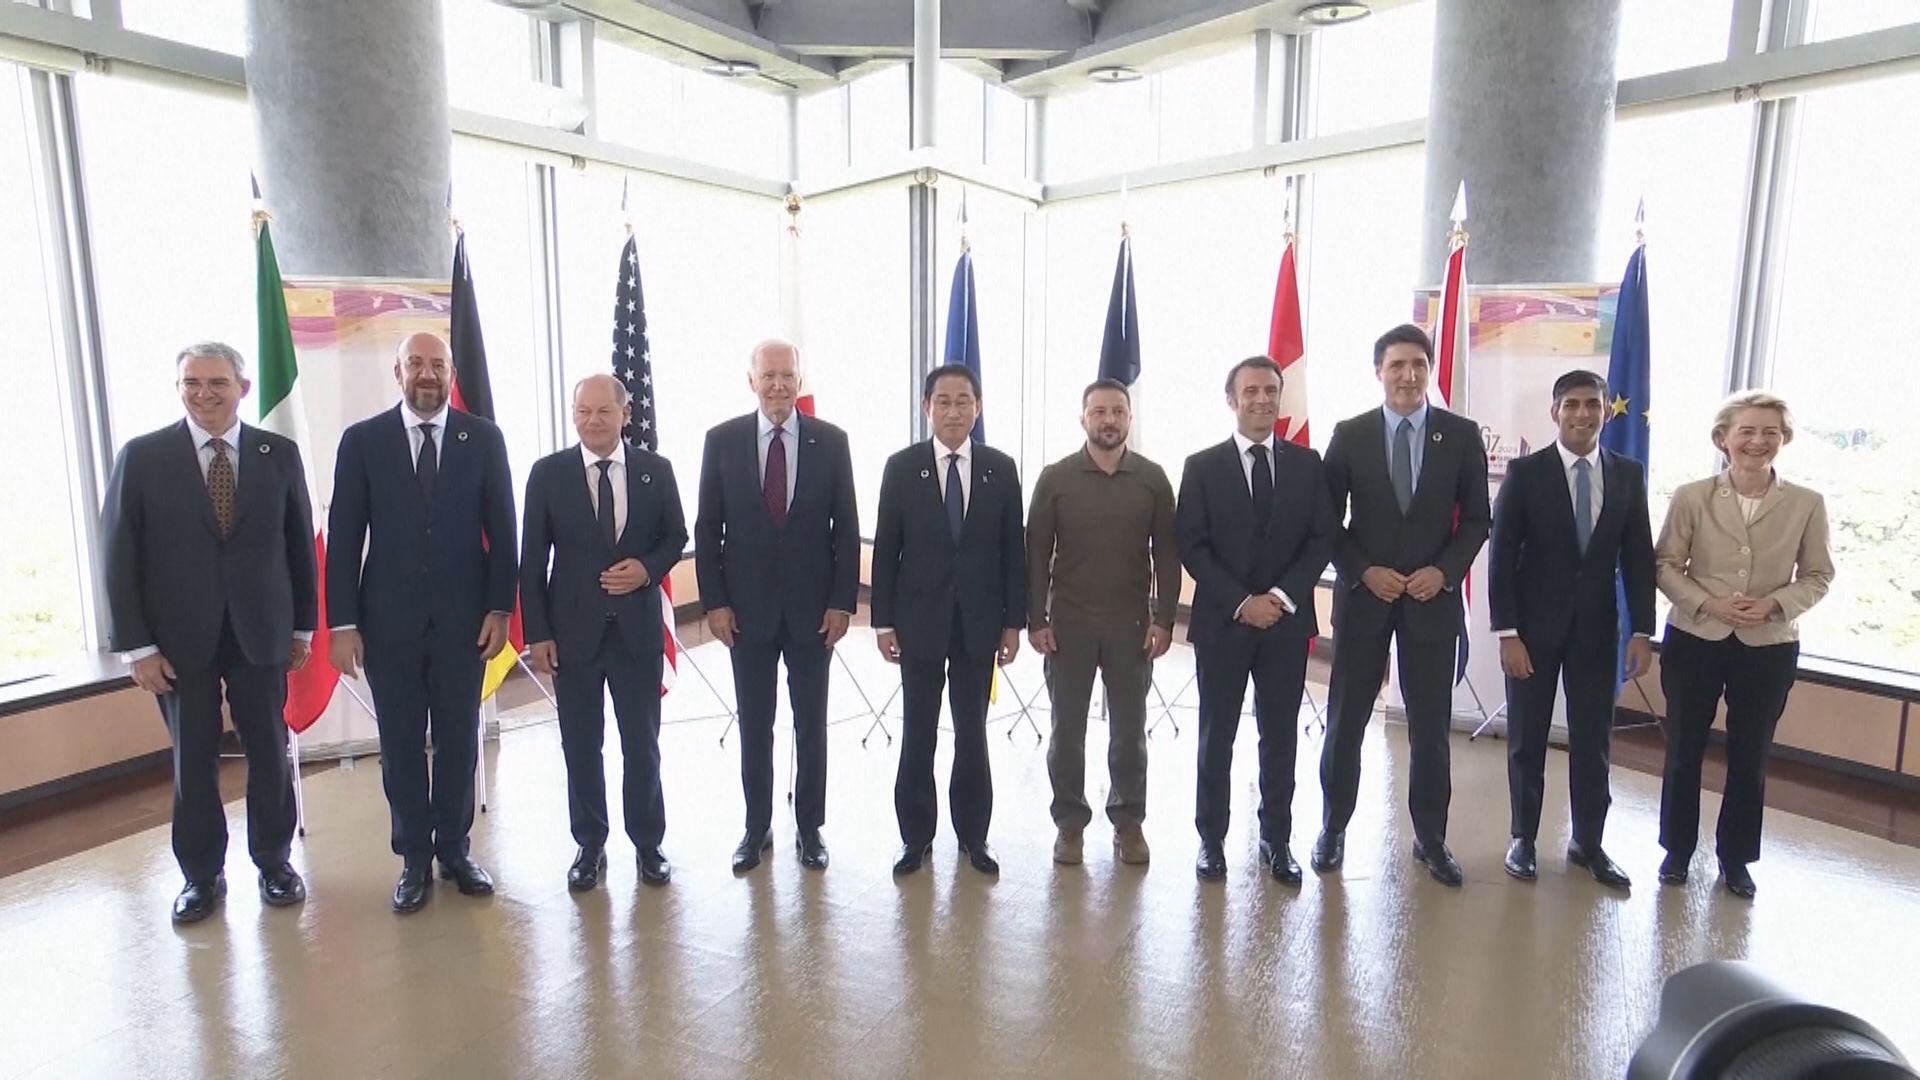 澤連斯基續於廣島會晤G7峰會領袖